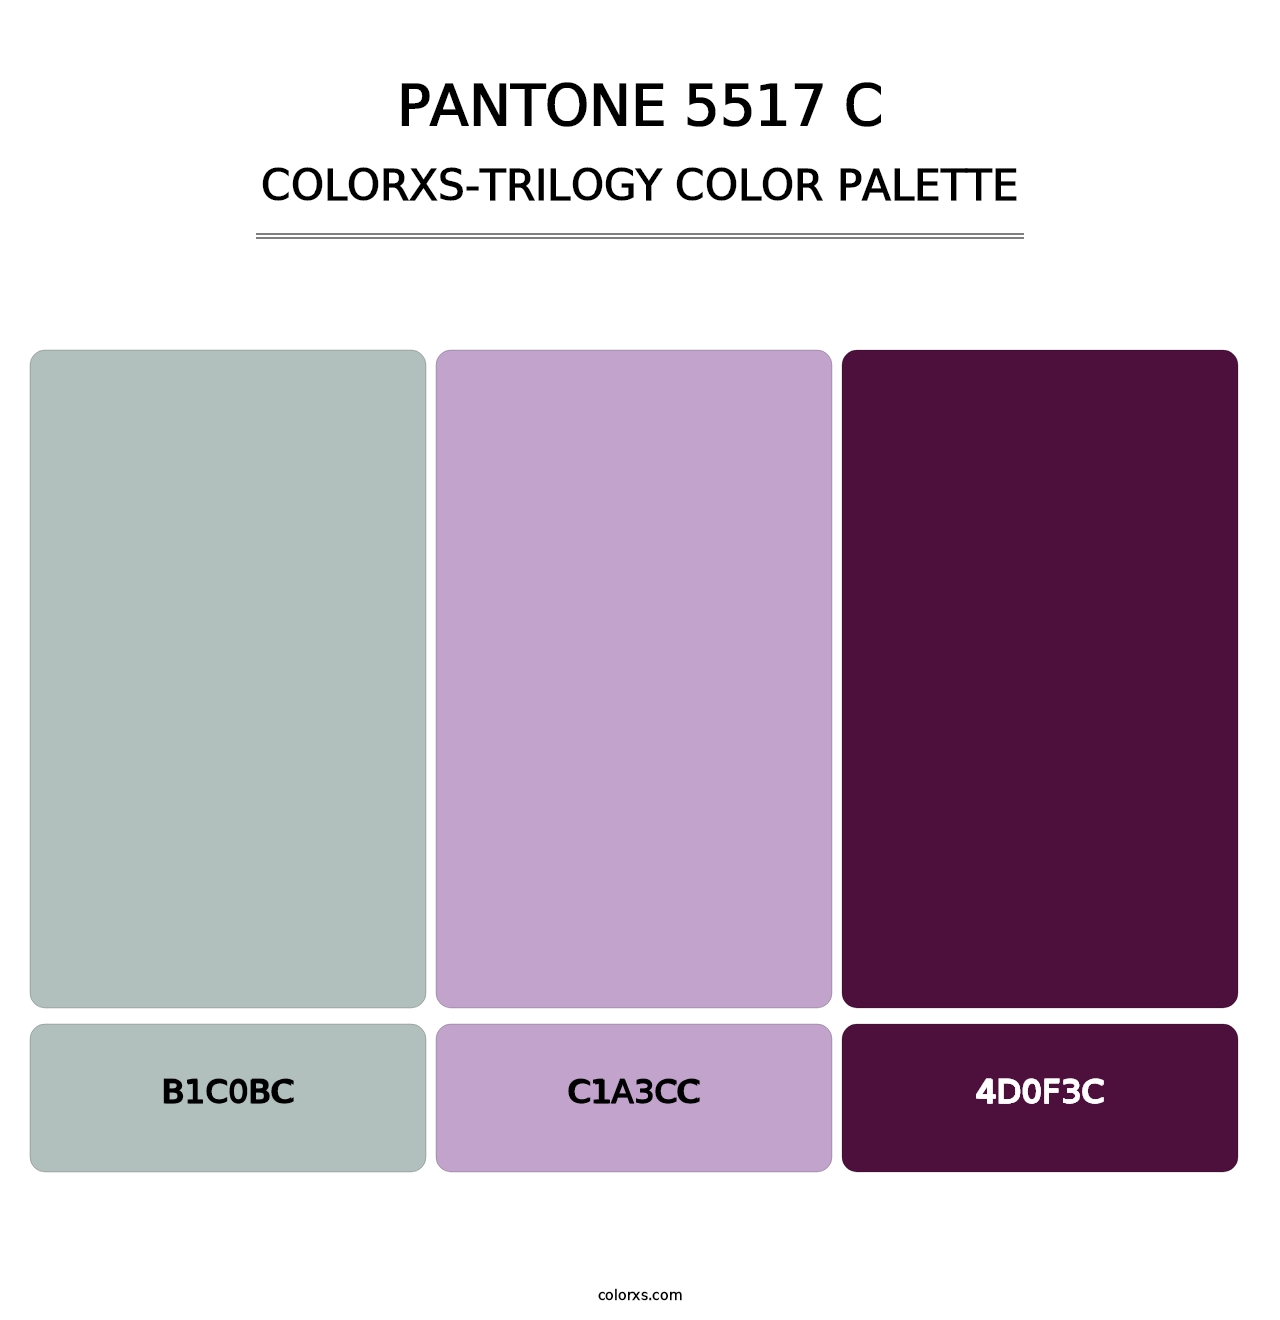 PANTONE 5517 C - Colorxs Trilogy Palette